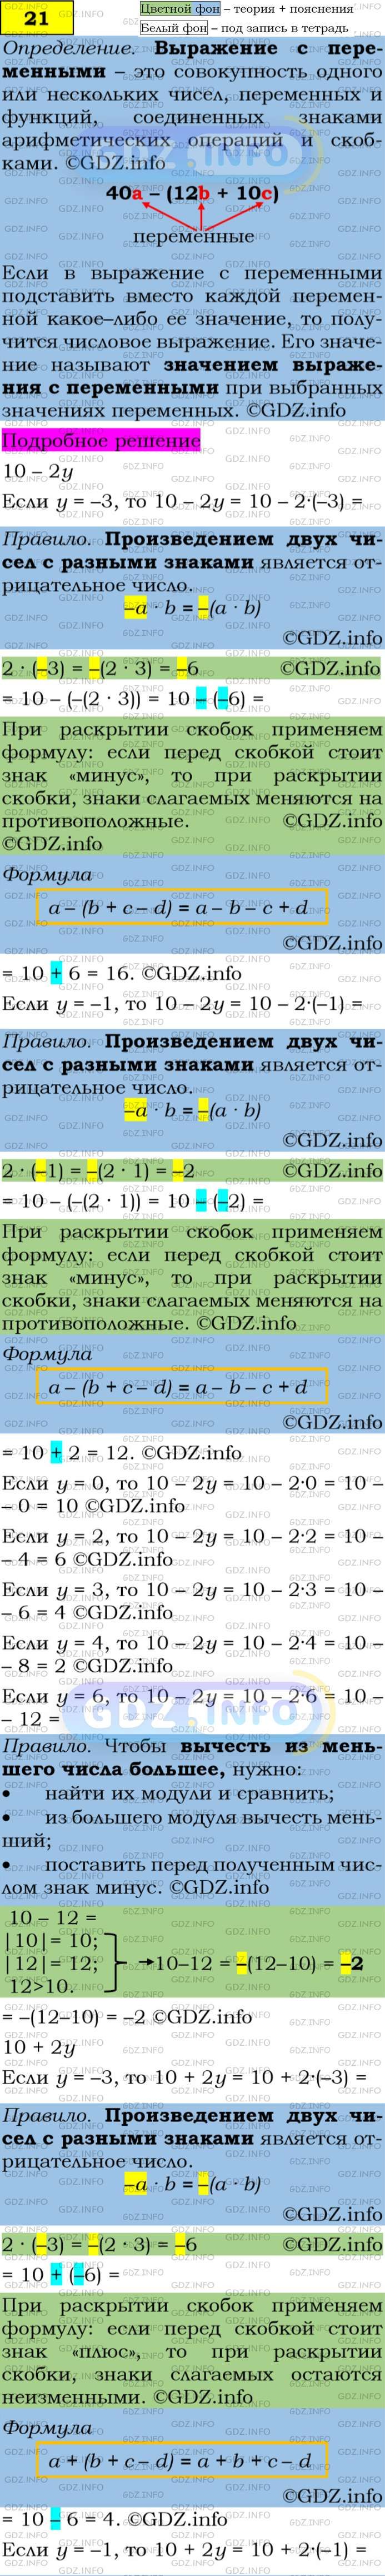 Фото подробного решения: Номер задания №21 из ГДЗ по Алгебре 7 класс: Макарычев Ю.Н.